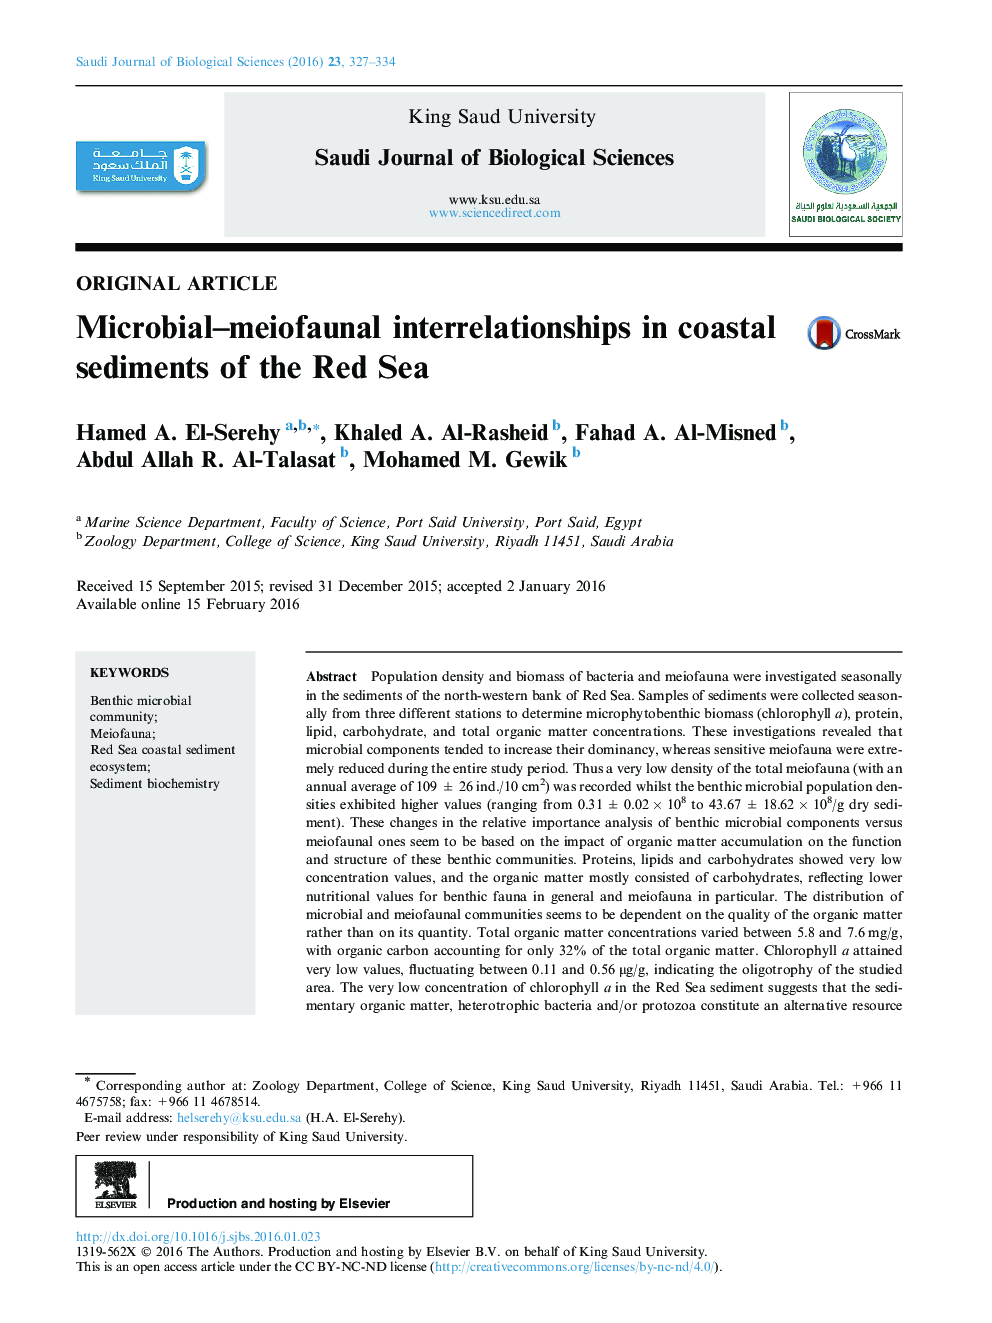 ارتباطات میکروبی بین فاکتورهای در رسوبات ساحلی دریای سرخ 